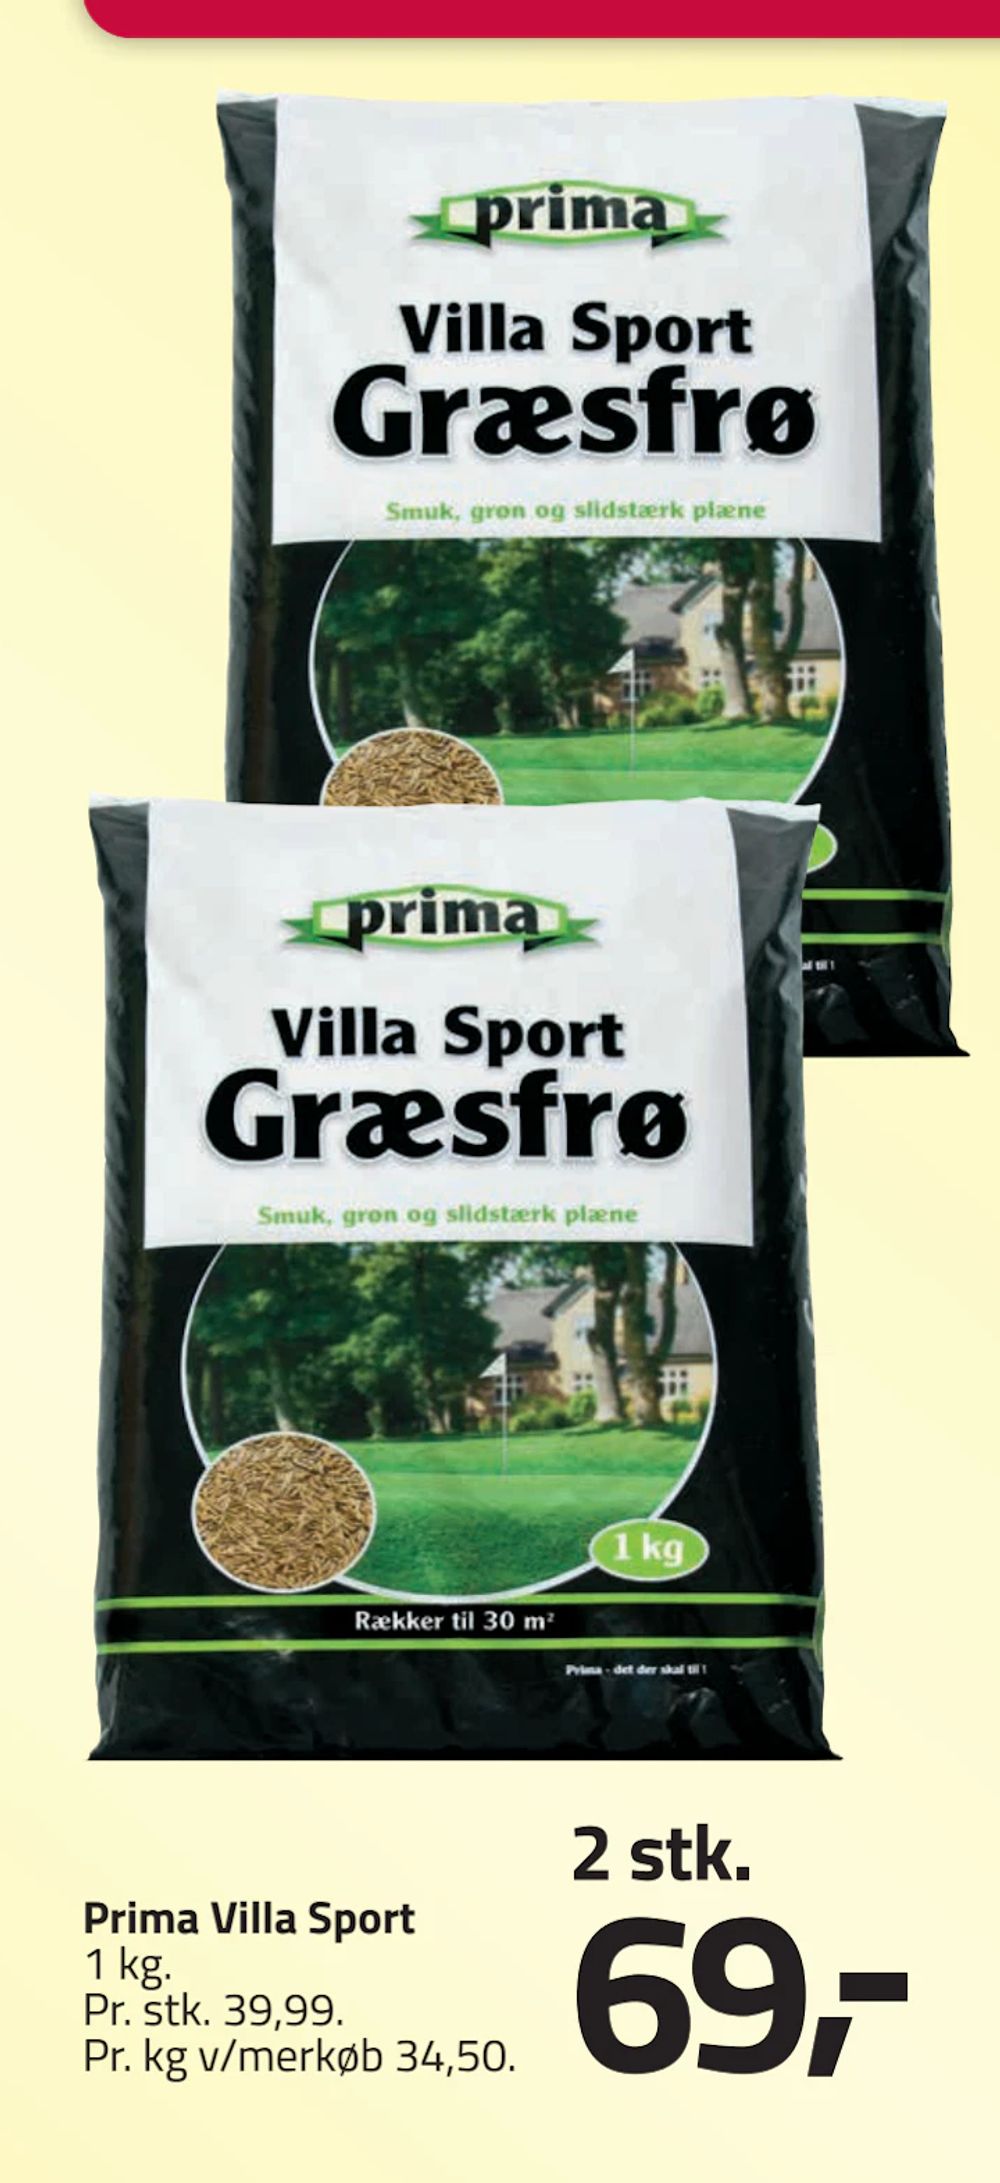 Tilbud på Prima Villa Sport fra Fleggaard til 69 kr.